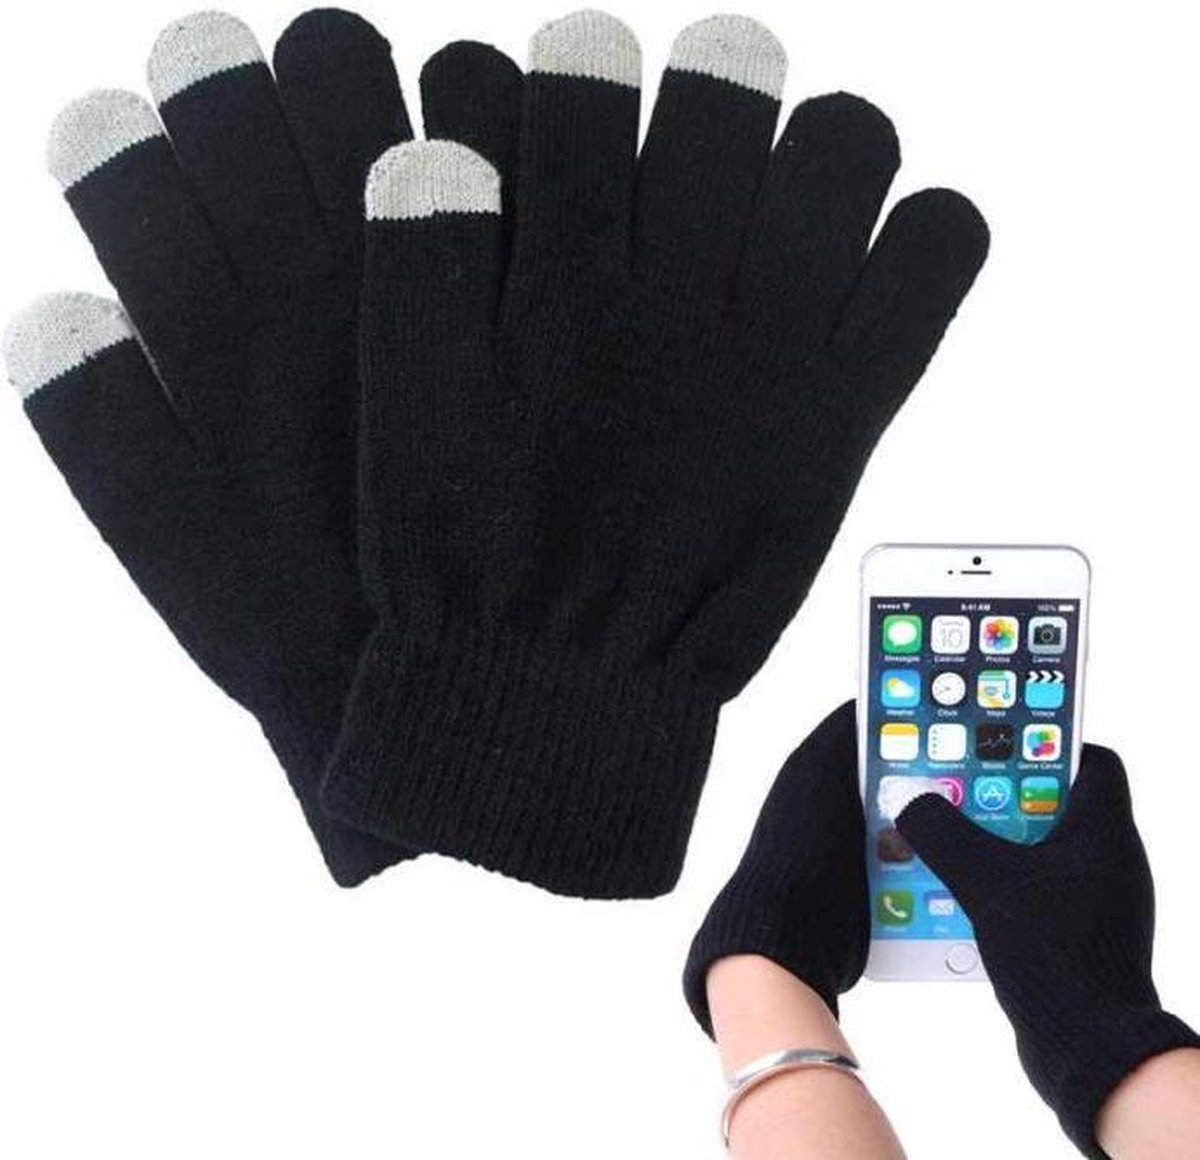 Vuil Continu schoonmaken Handschoenen met Touchscreen - Zwart | bol.com